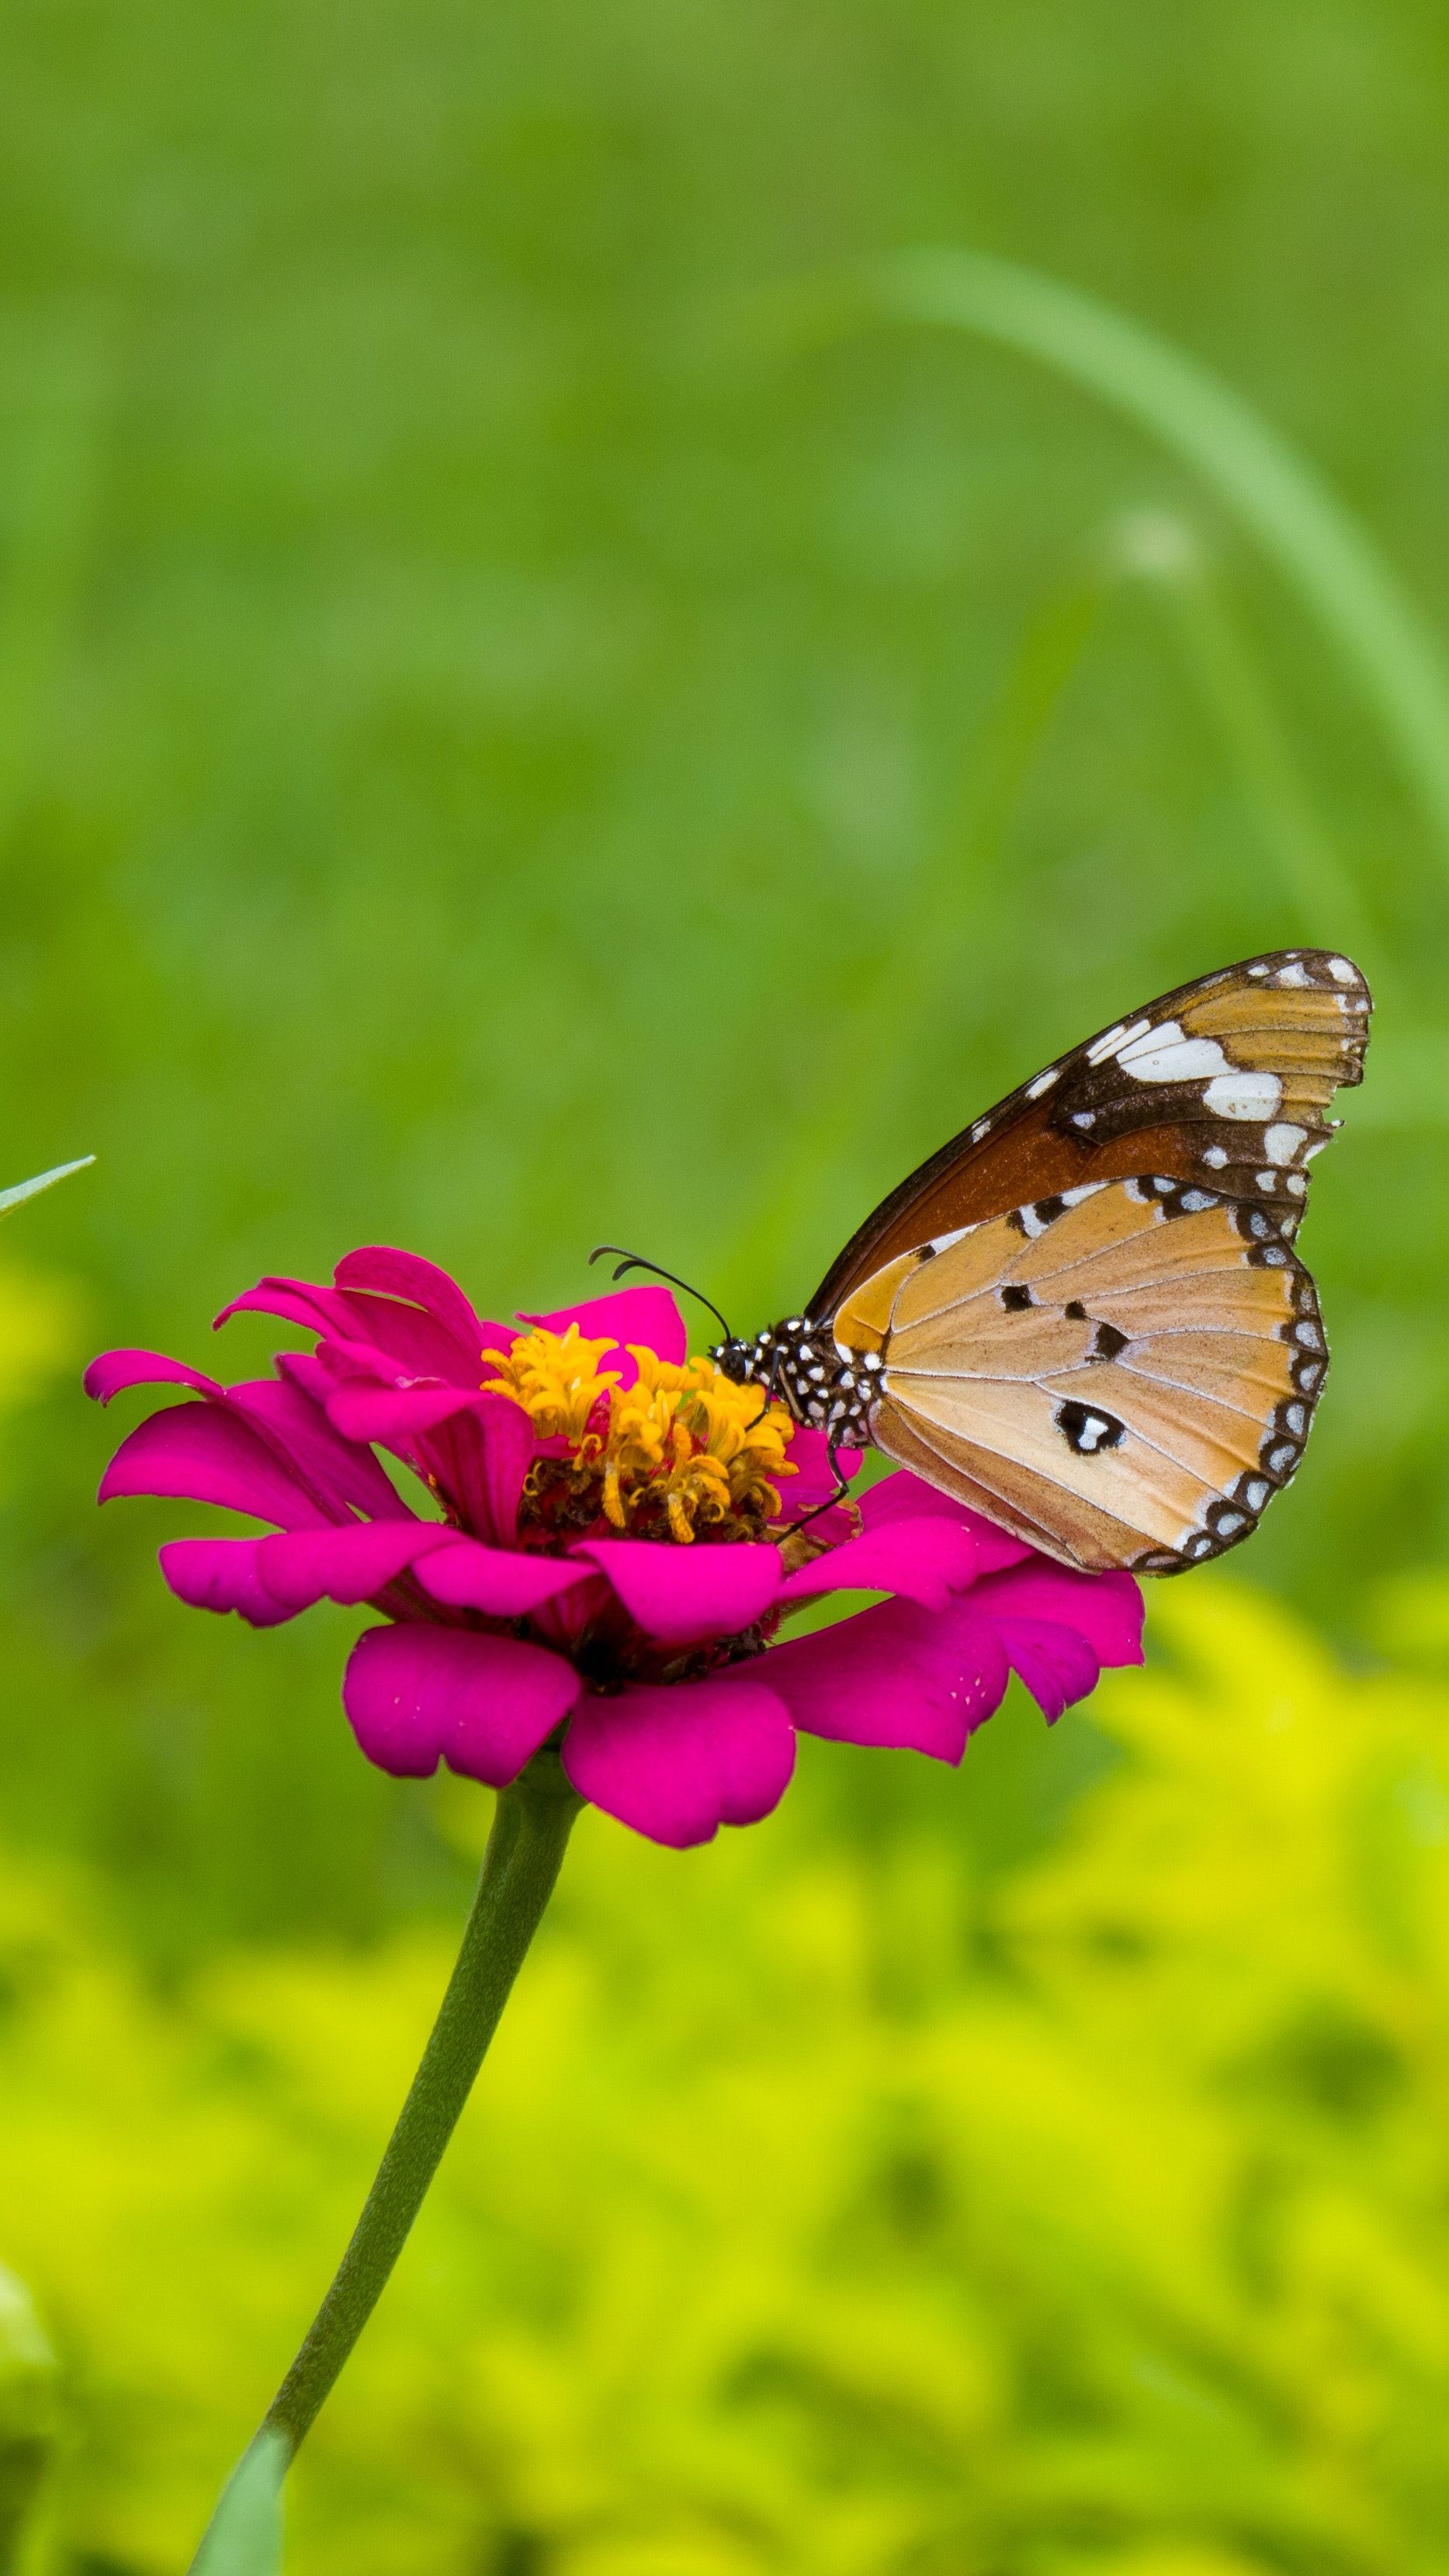 Thăng hoa cùng những hình ảnh con bướm tuyệt đẹp trong thiên nhiên tự nhiên, độc đáo và thú vị. Bạn sẽ được tận hưởng vẻ đẹp độc đáo của chúng qua những tác phẩm ảnh đầy sự nghệ thuật, tạo nên một cảm giác đầy trải nghiệm và khoái cảm khi chiêm ngưỡng chúng.